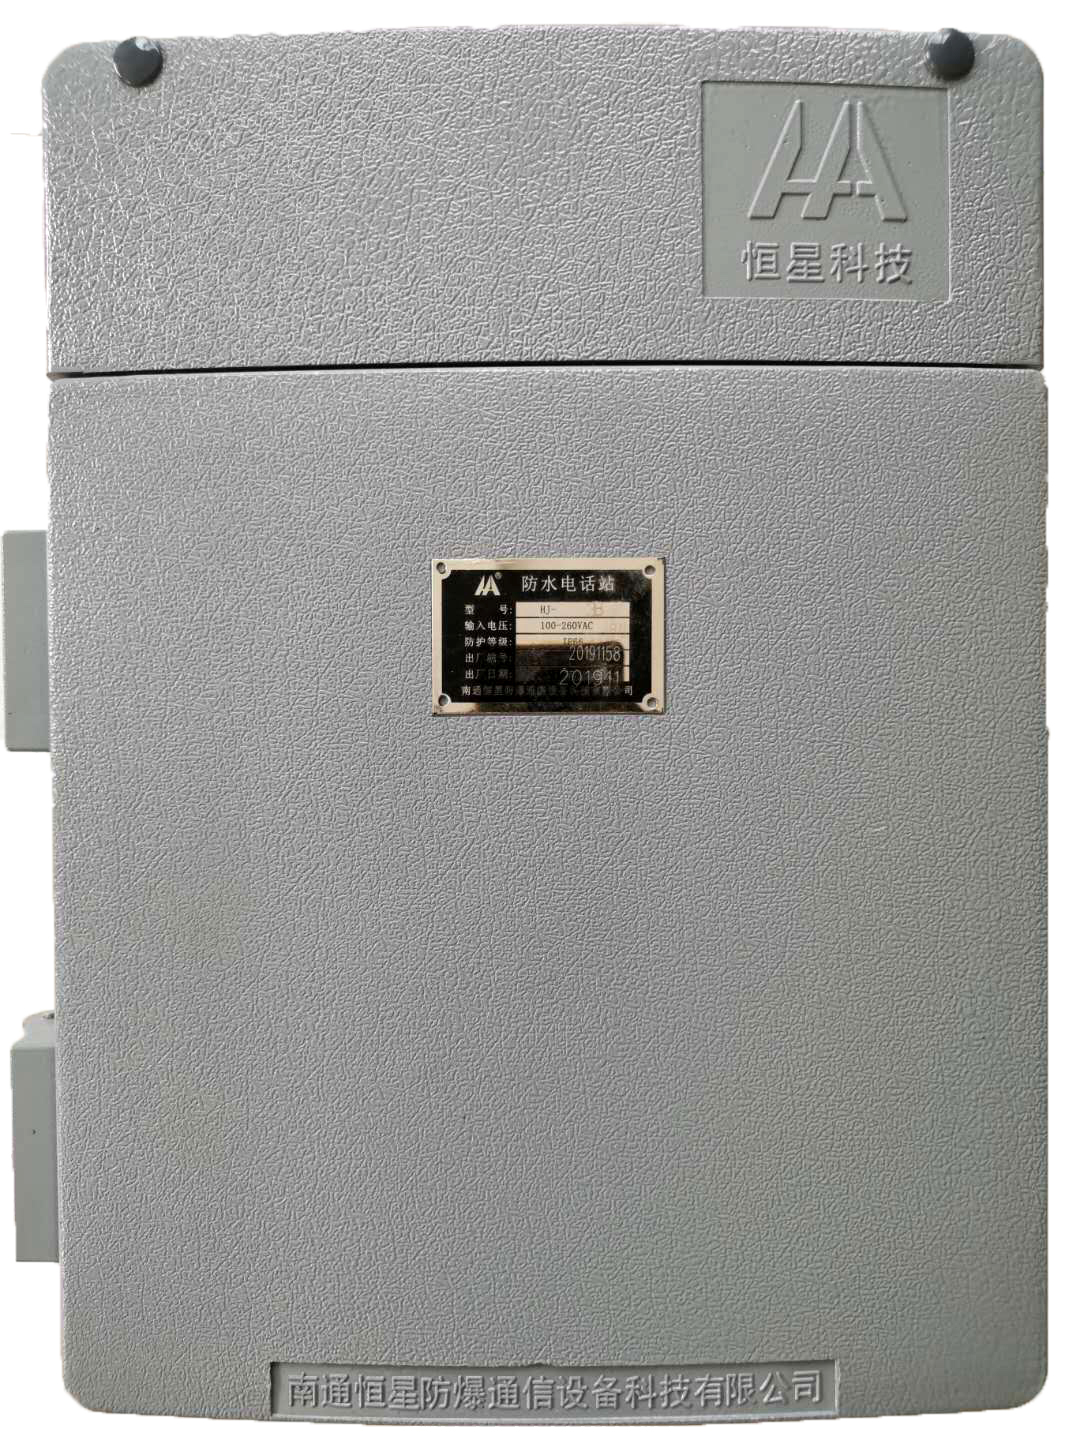 供应第二代HA-2无主机通信设备扩音对讲为本质安全型具有普通电话机功能外